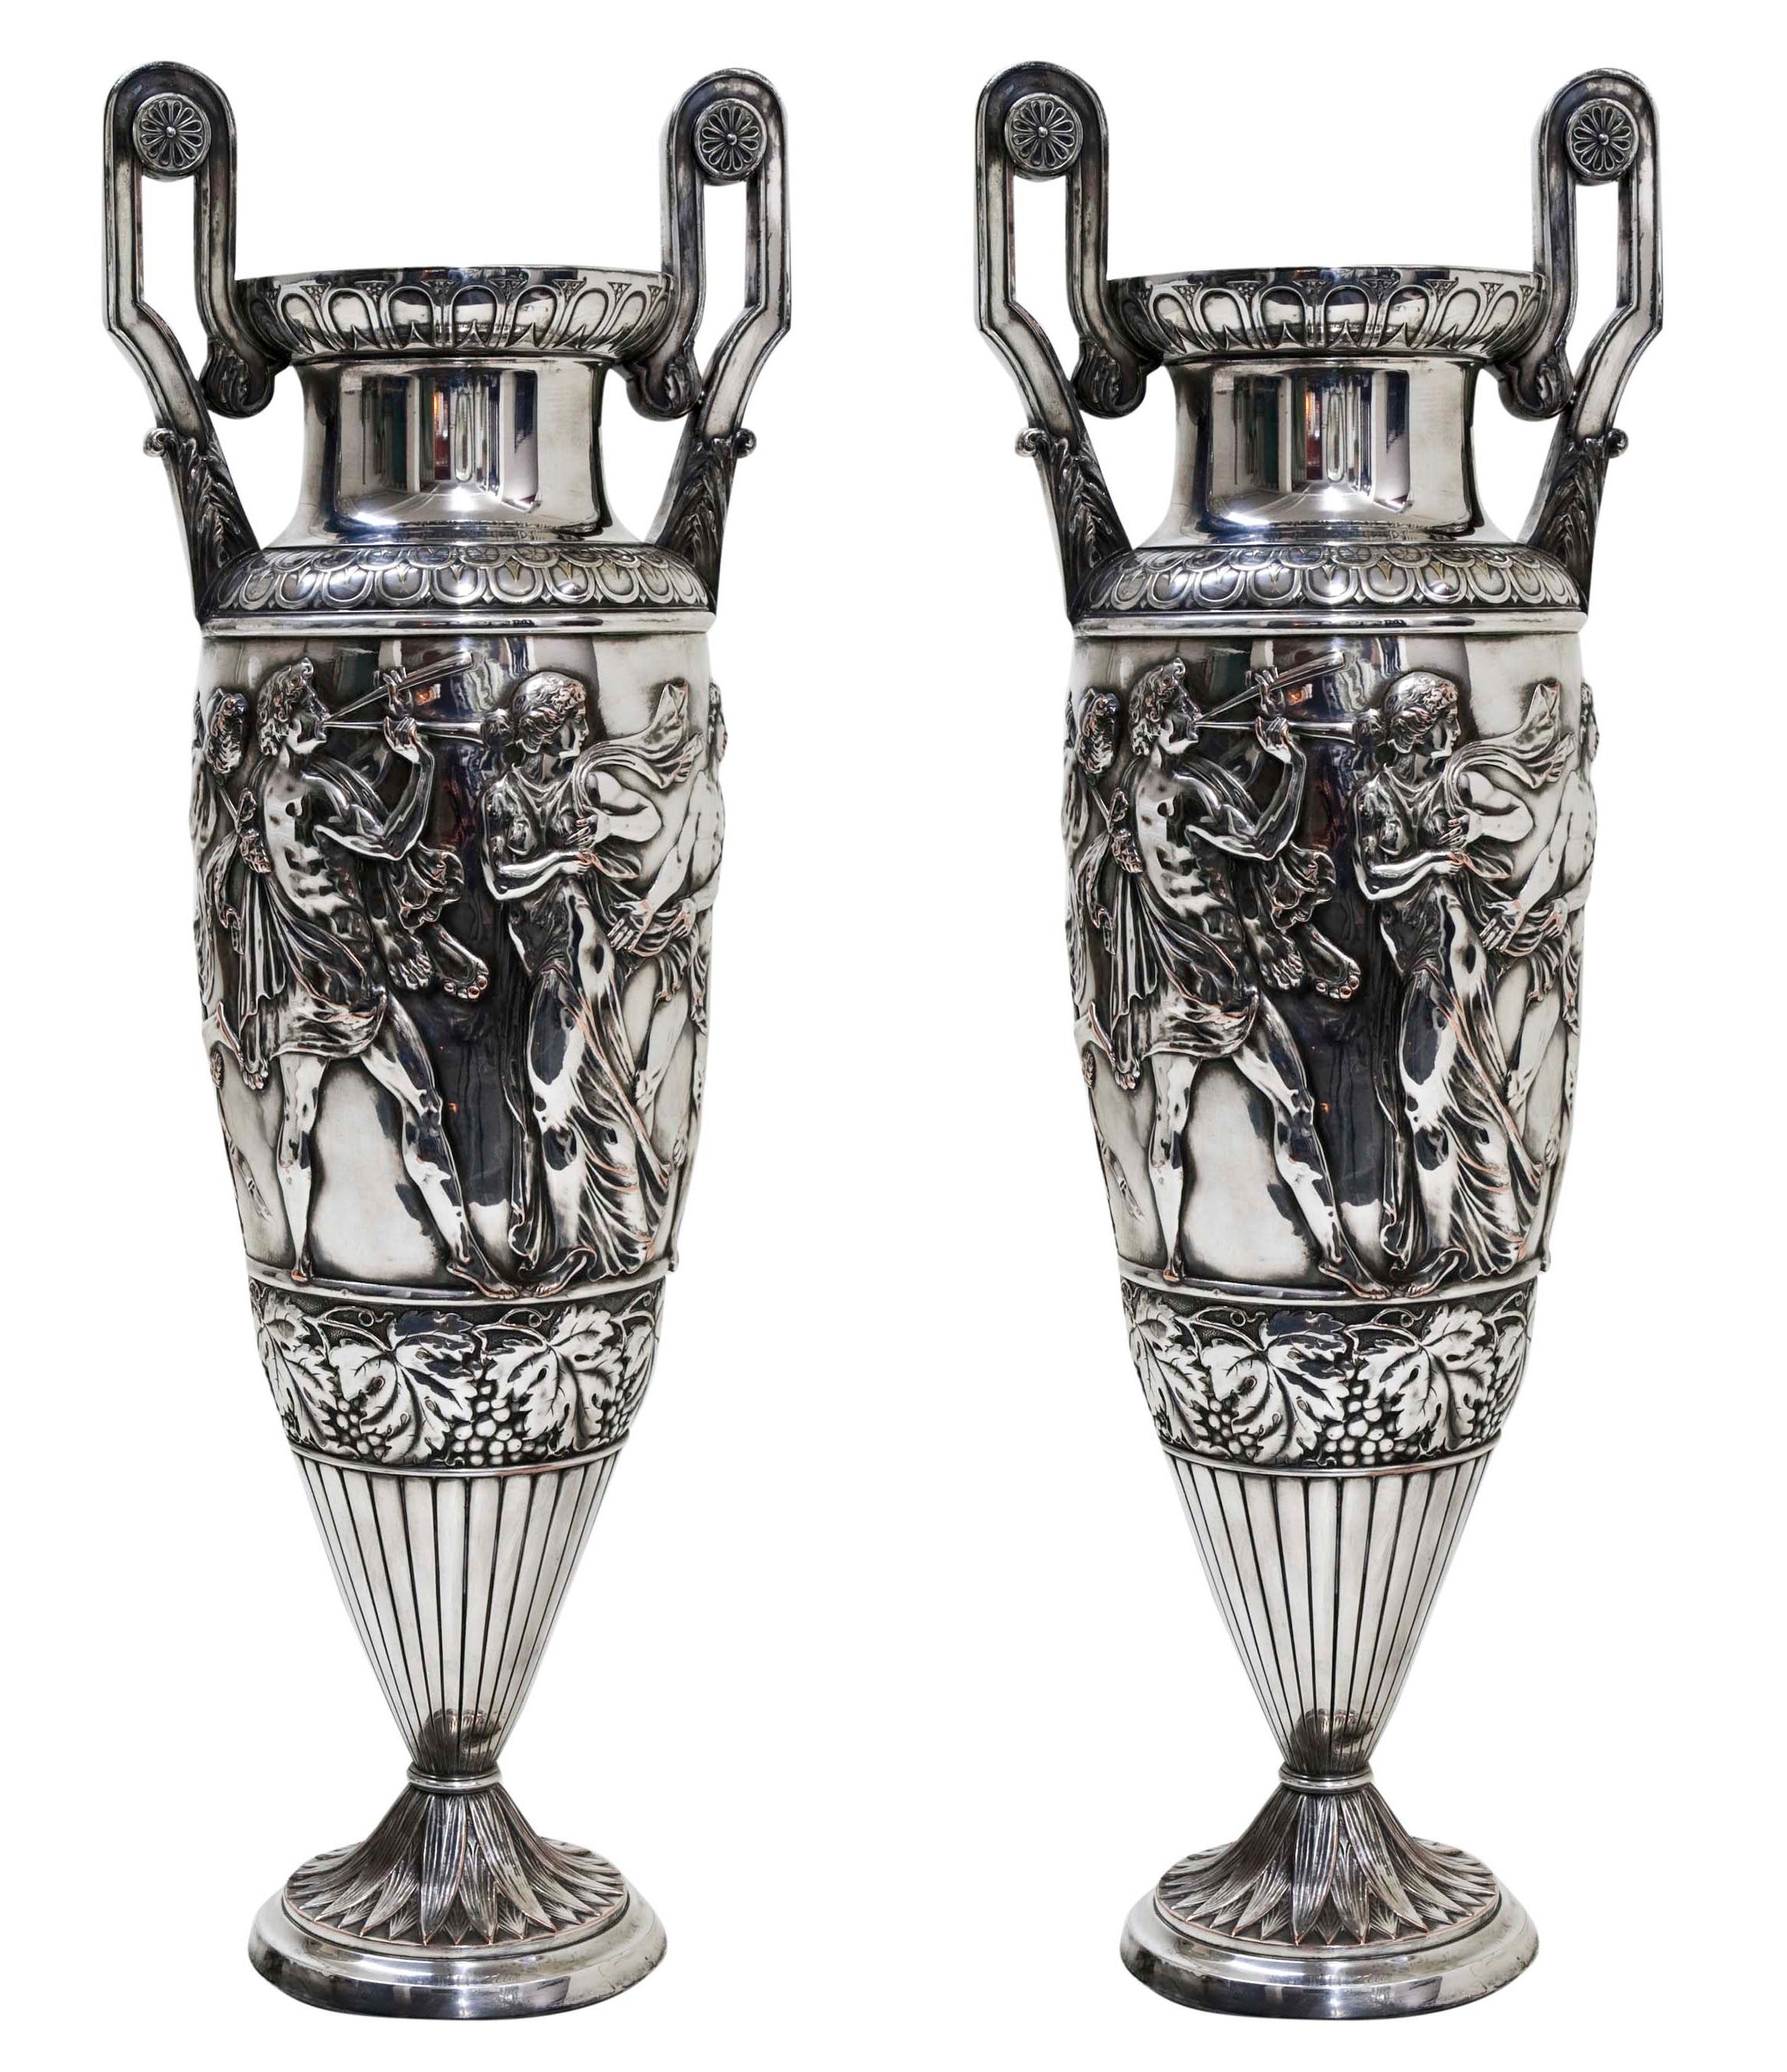 Pair of Big Vases Wmf, German, 1910 in Silver Plated, Jugendstil, Art Nouveau For Sale 5